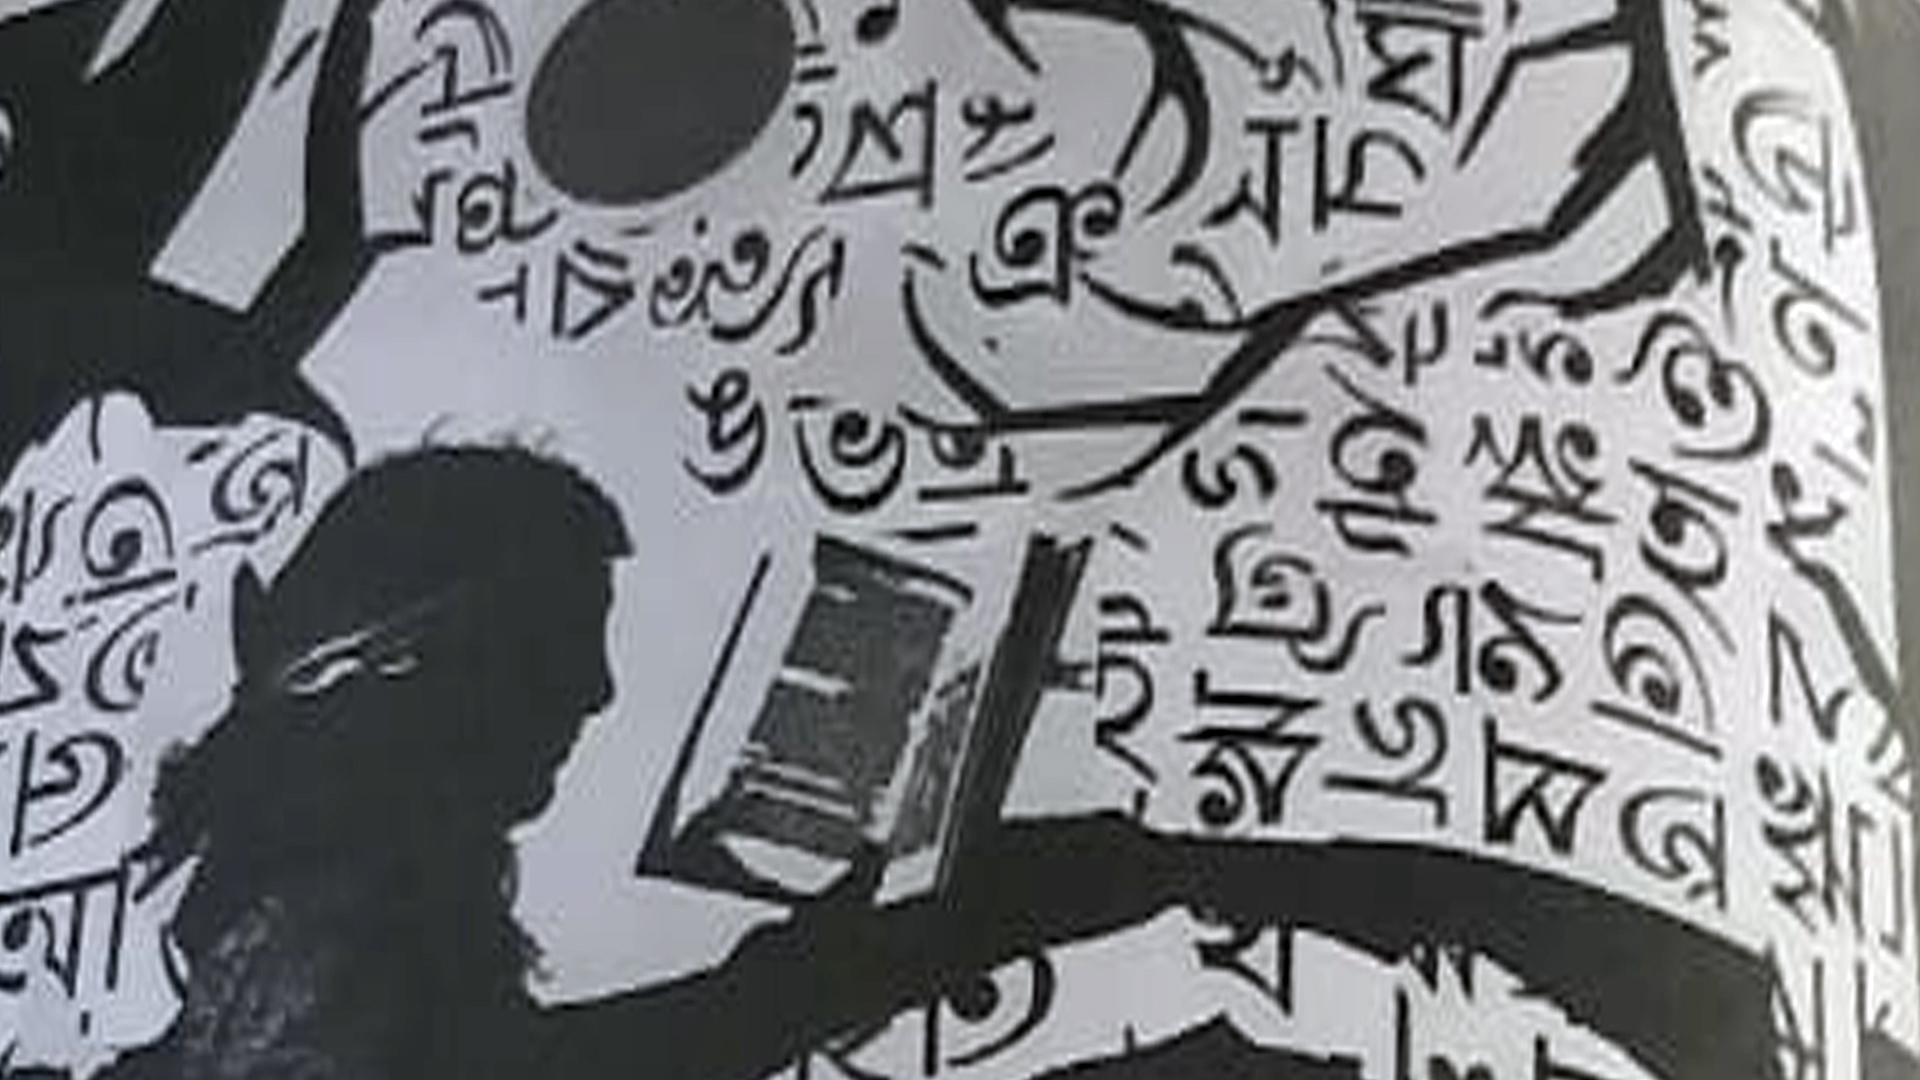 বাংলা ভাষা ও সাহিত্য : ধ্রুপদী মানের উপাদান প্রসঙ্গে